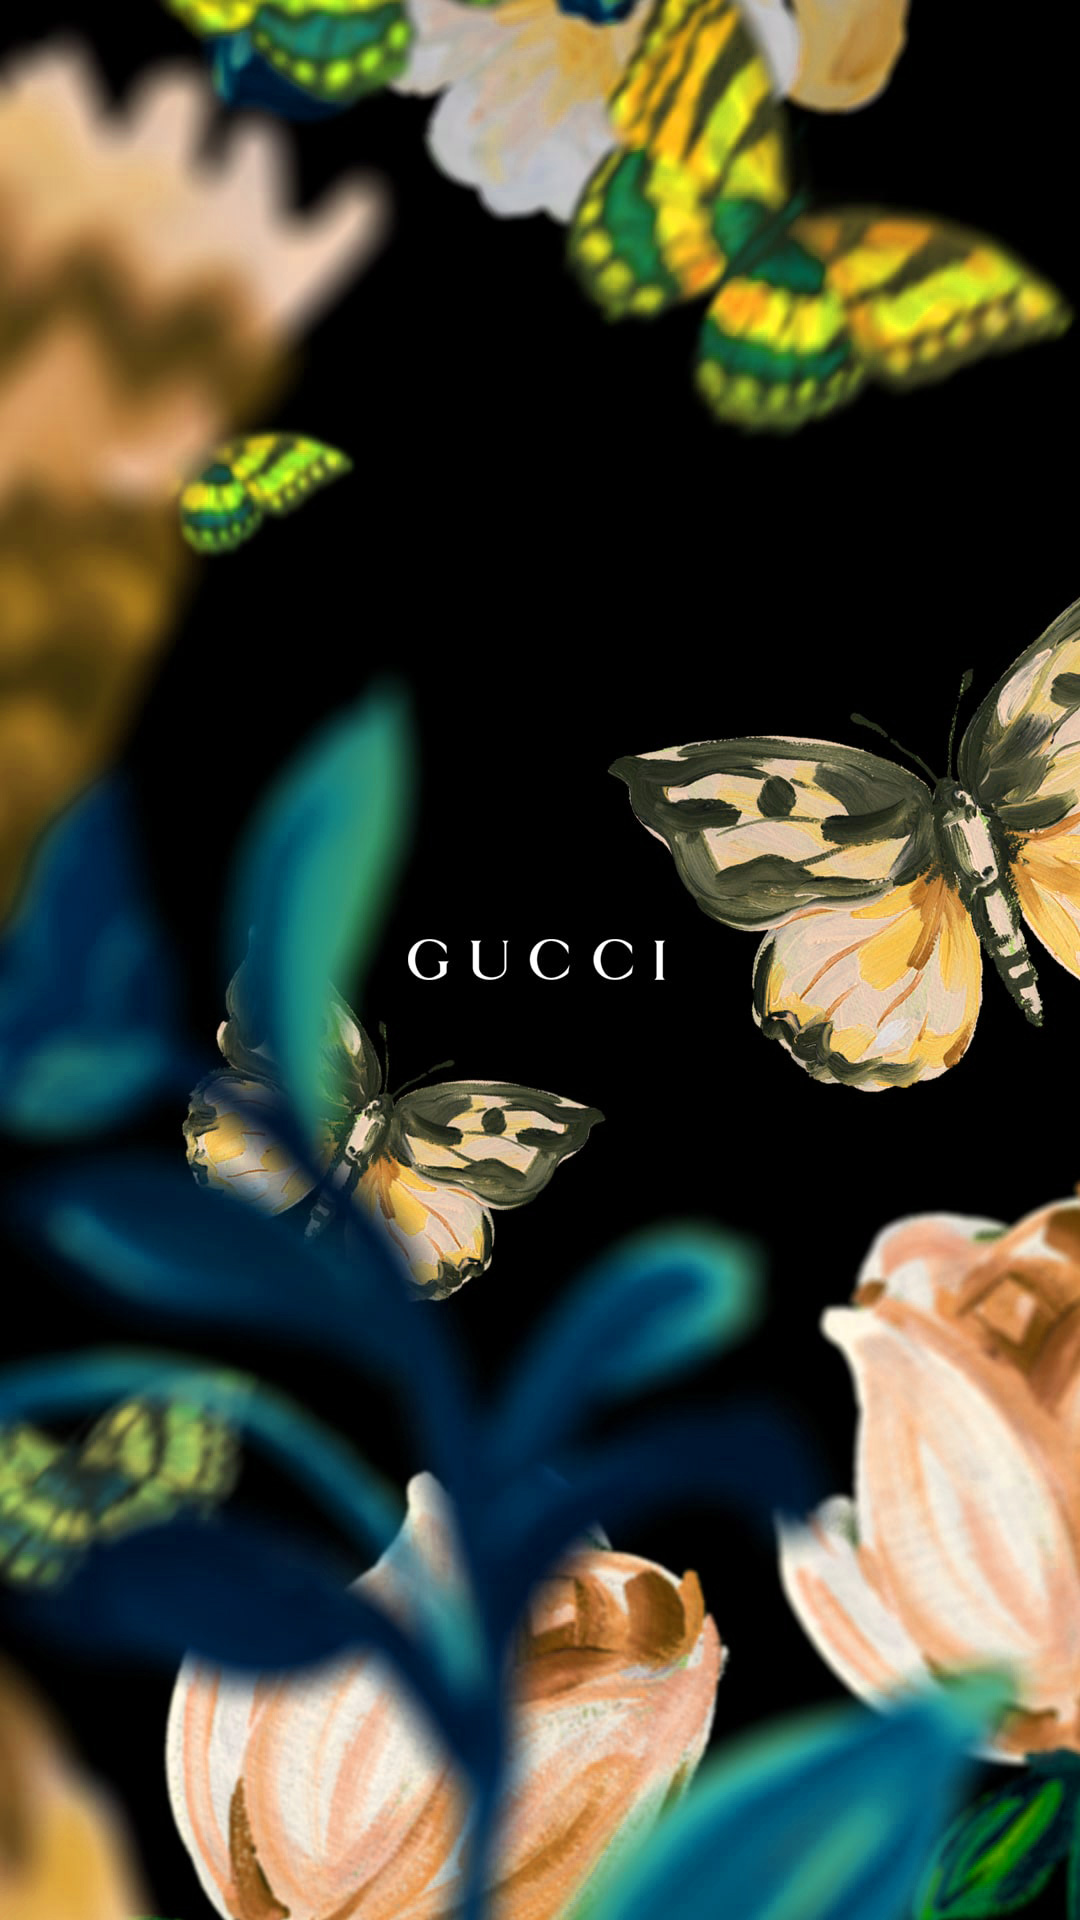 Bộ sưu tập hình nền Gucci đang chờ đón bạn với những bức ảnh tuyệt đẹp và độc đáo nhất. Với phong cách thời trang độc quyền của thương hiệu này, bạn sẽ không thể rời mắt khỏi màn hình điện thoại của mình. Hãy khám phá ngay!